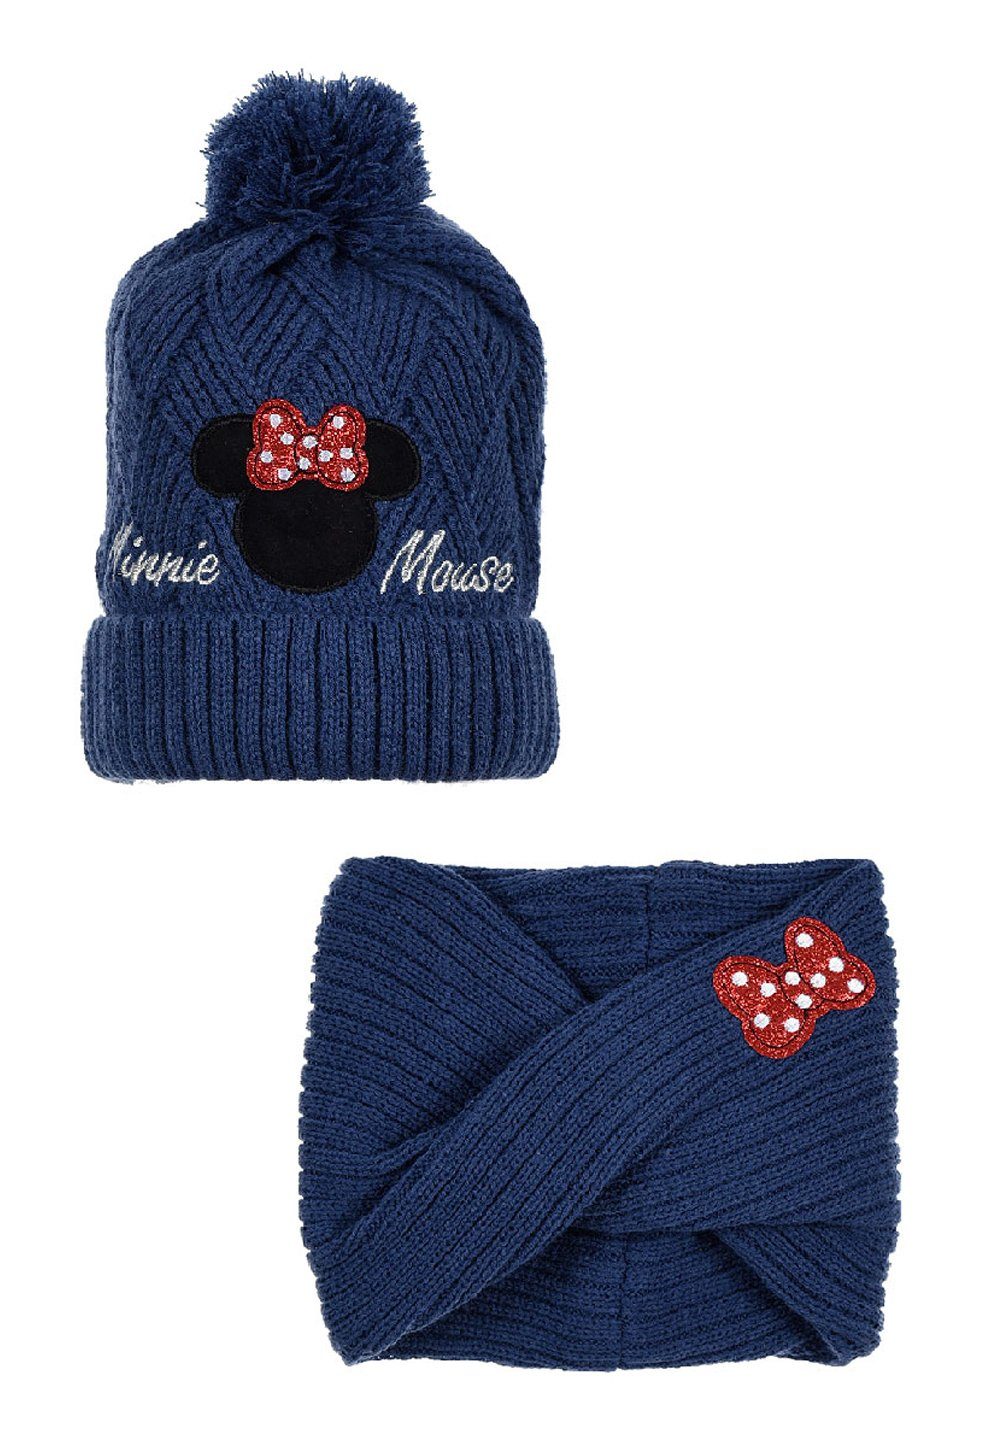 Minnie Mouse Kinder Loop und Mütze (SET) Mädchen Winter-Set Bommelmütze Maus Dunkel-Blau Disney Mini